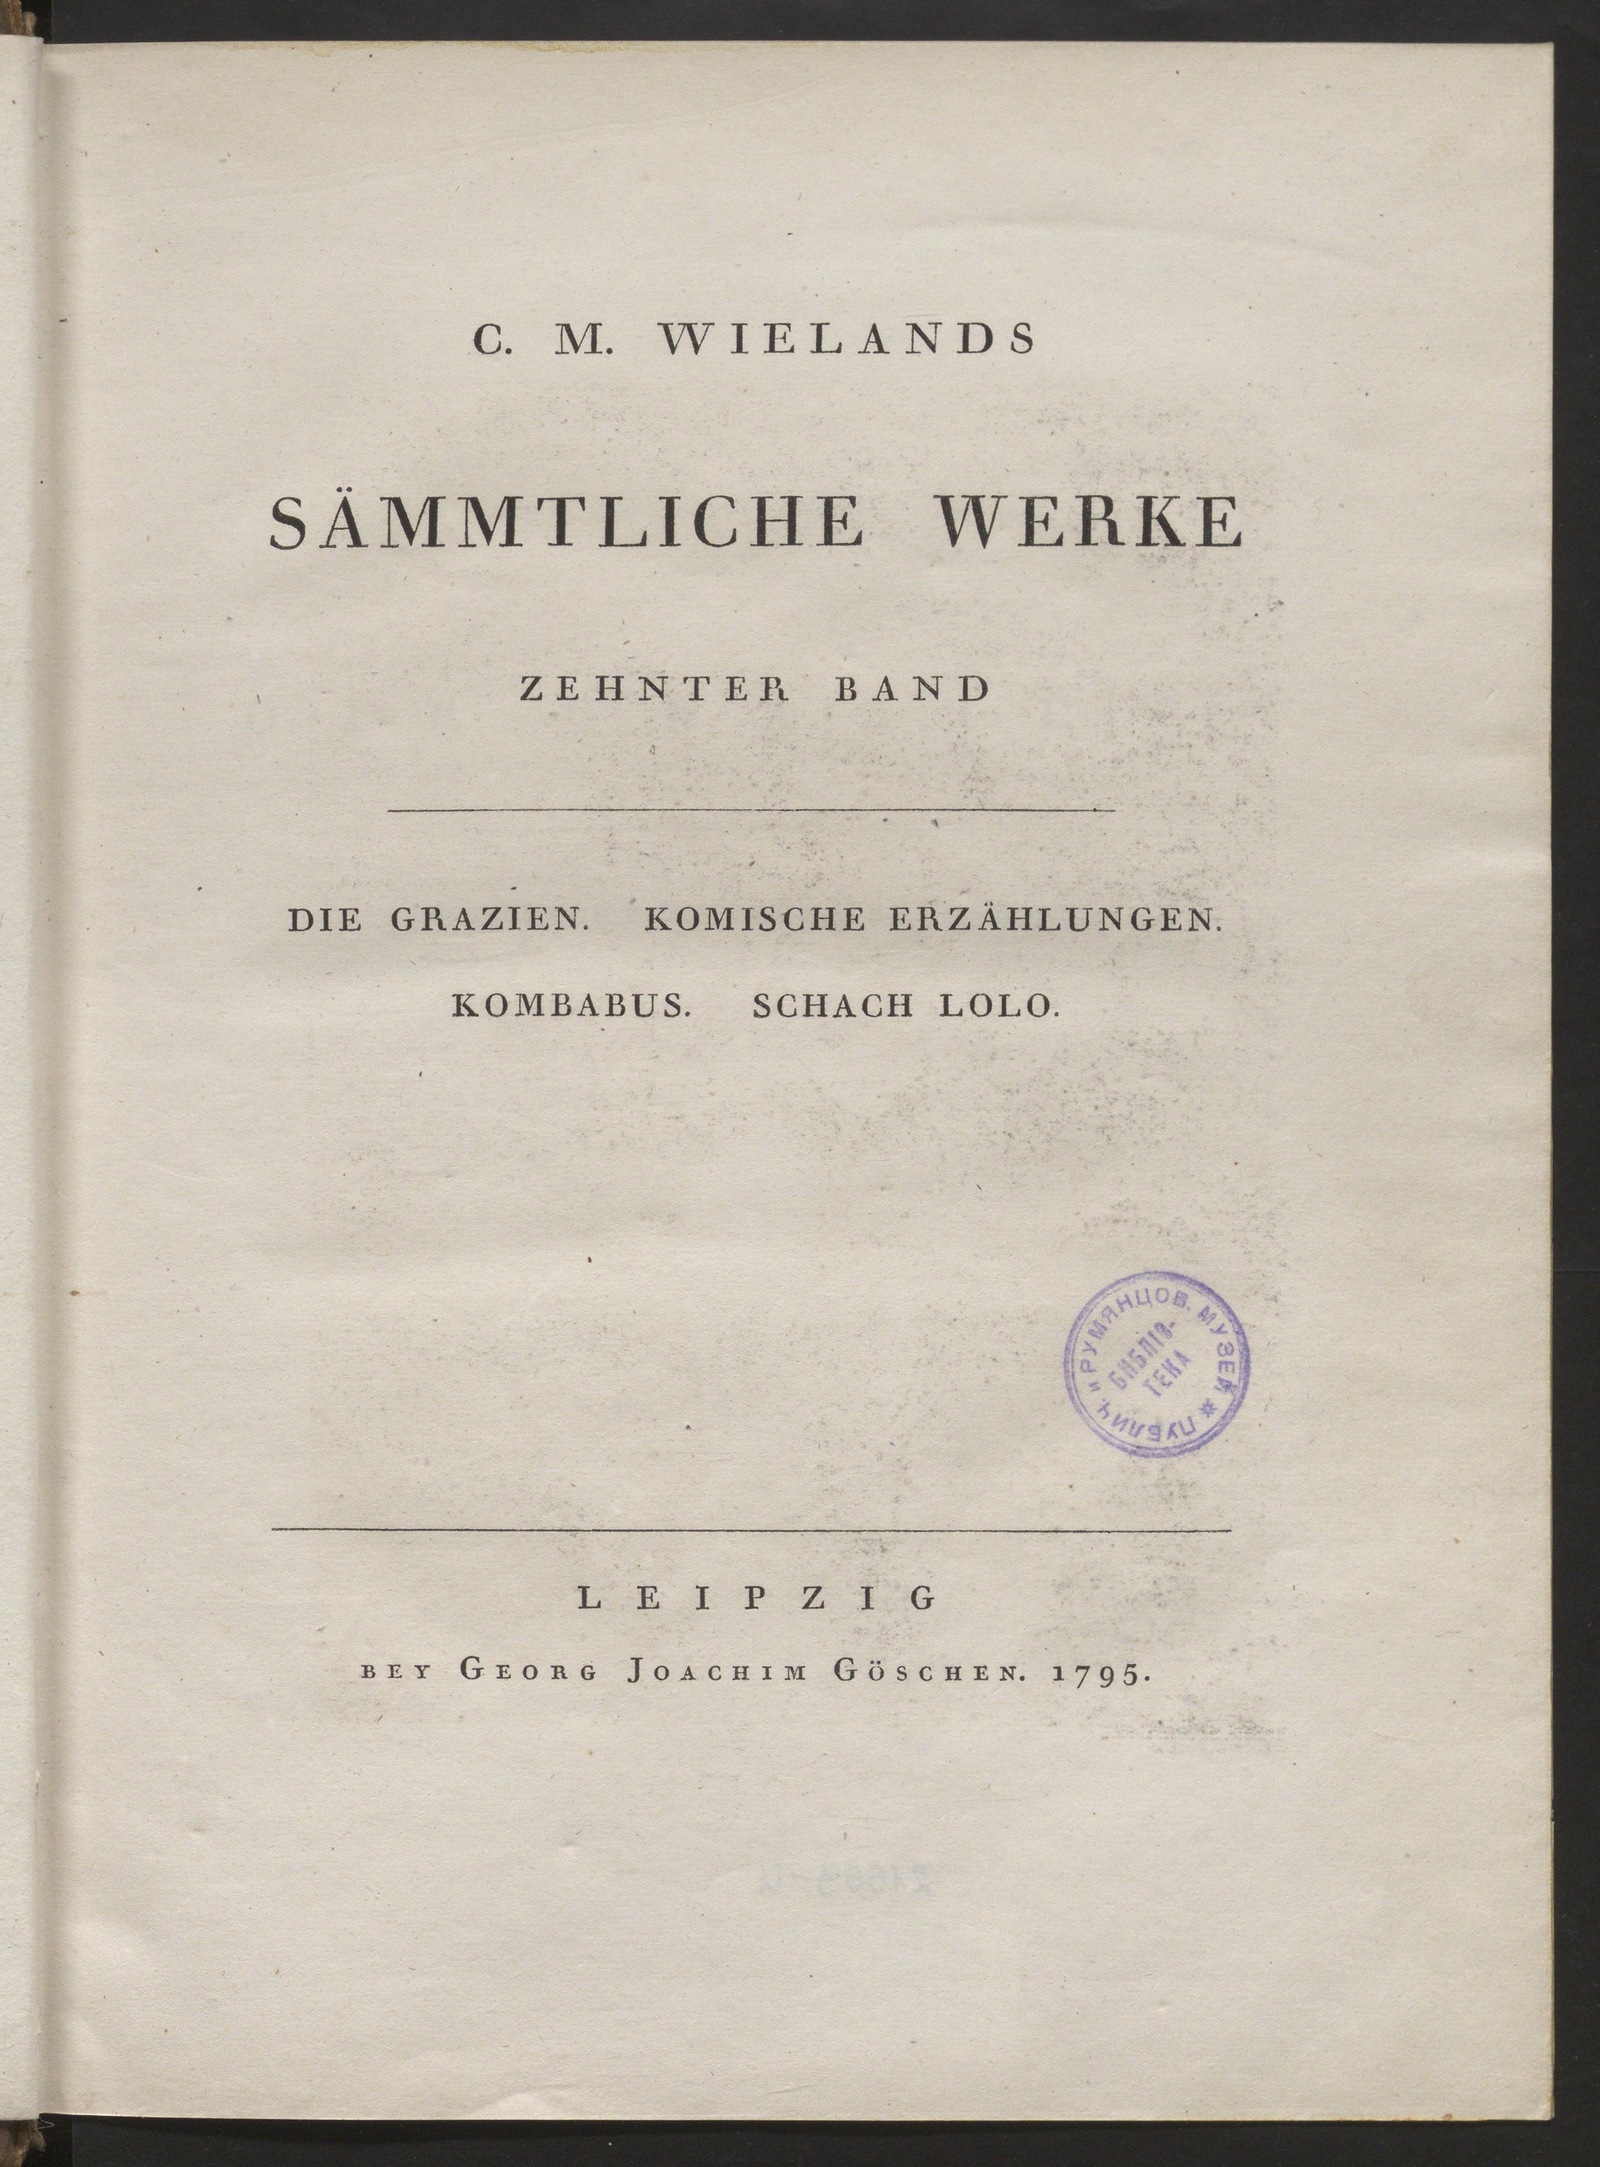 Изображение C. M. Wielands Sämmtliche Werke. Bd. 10. Die Grazien. Komische Erzählungen. Kombabus. Schach Lolo